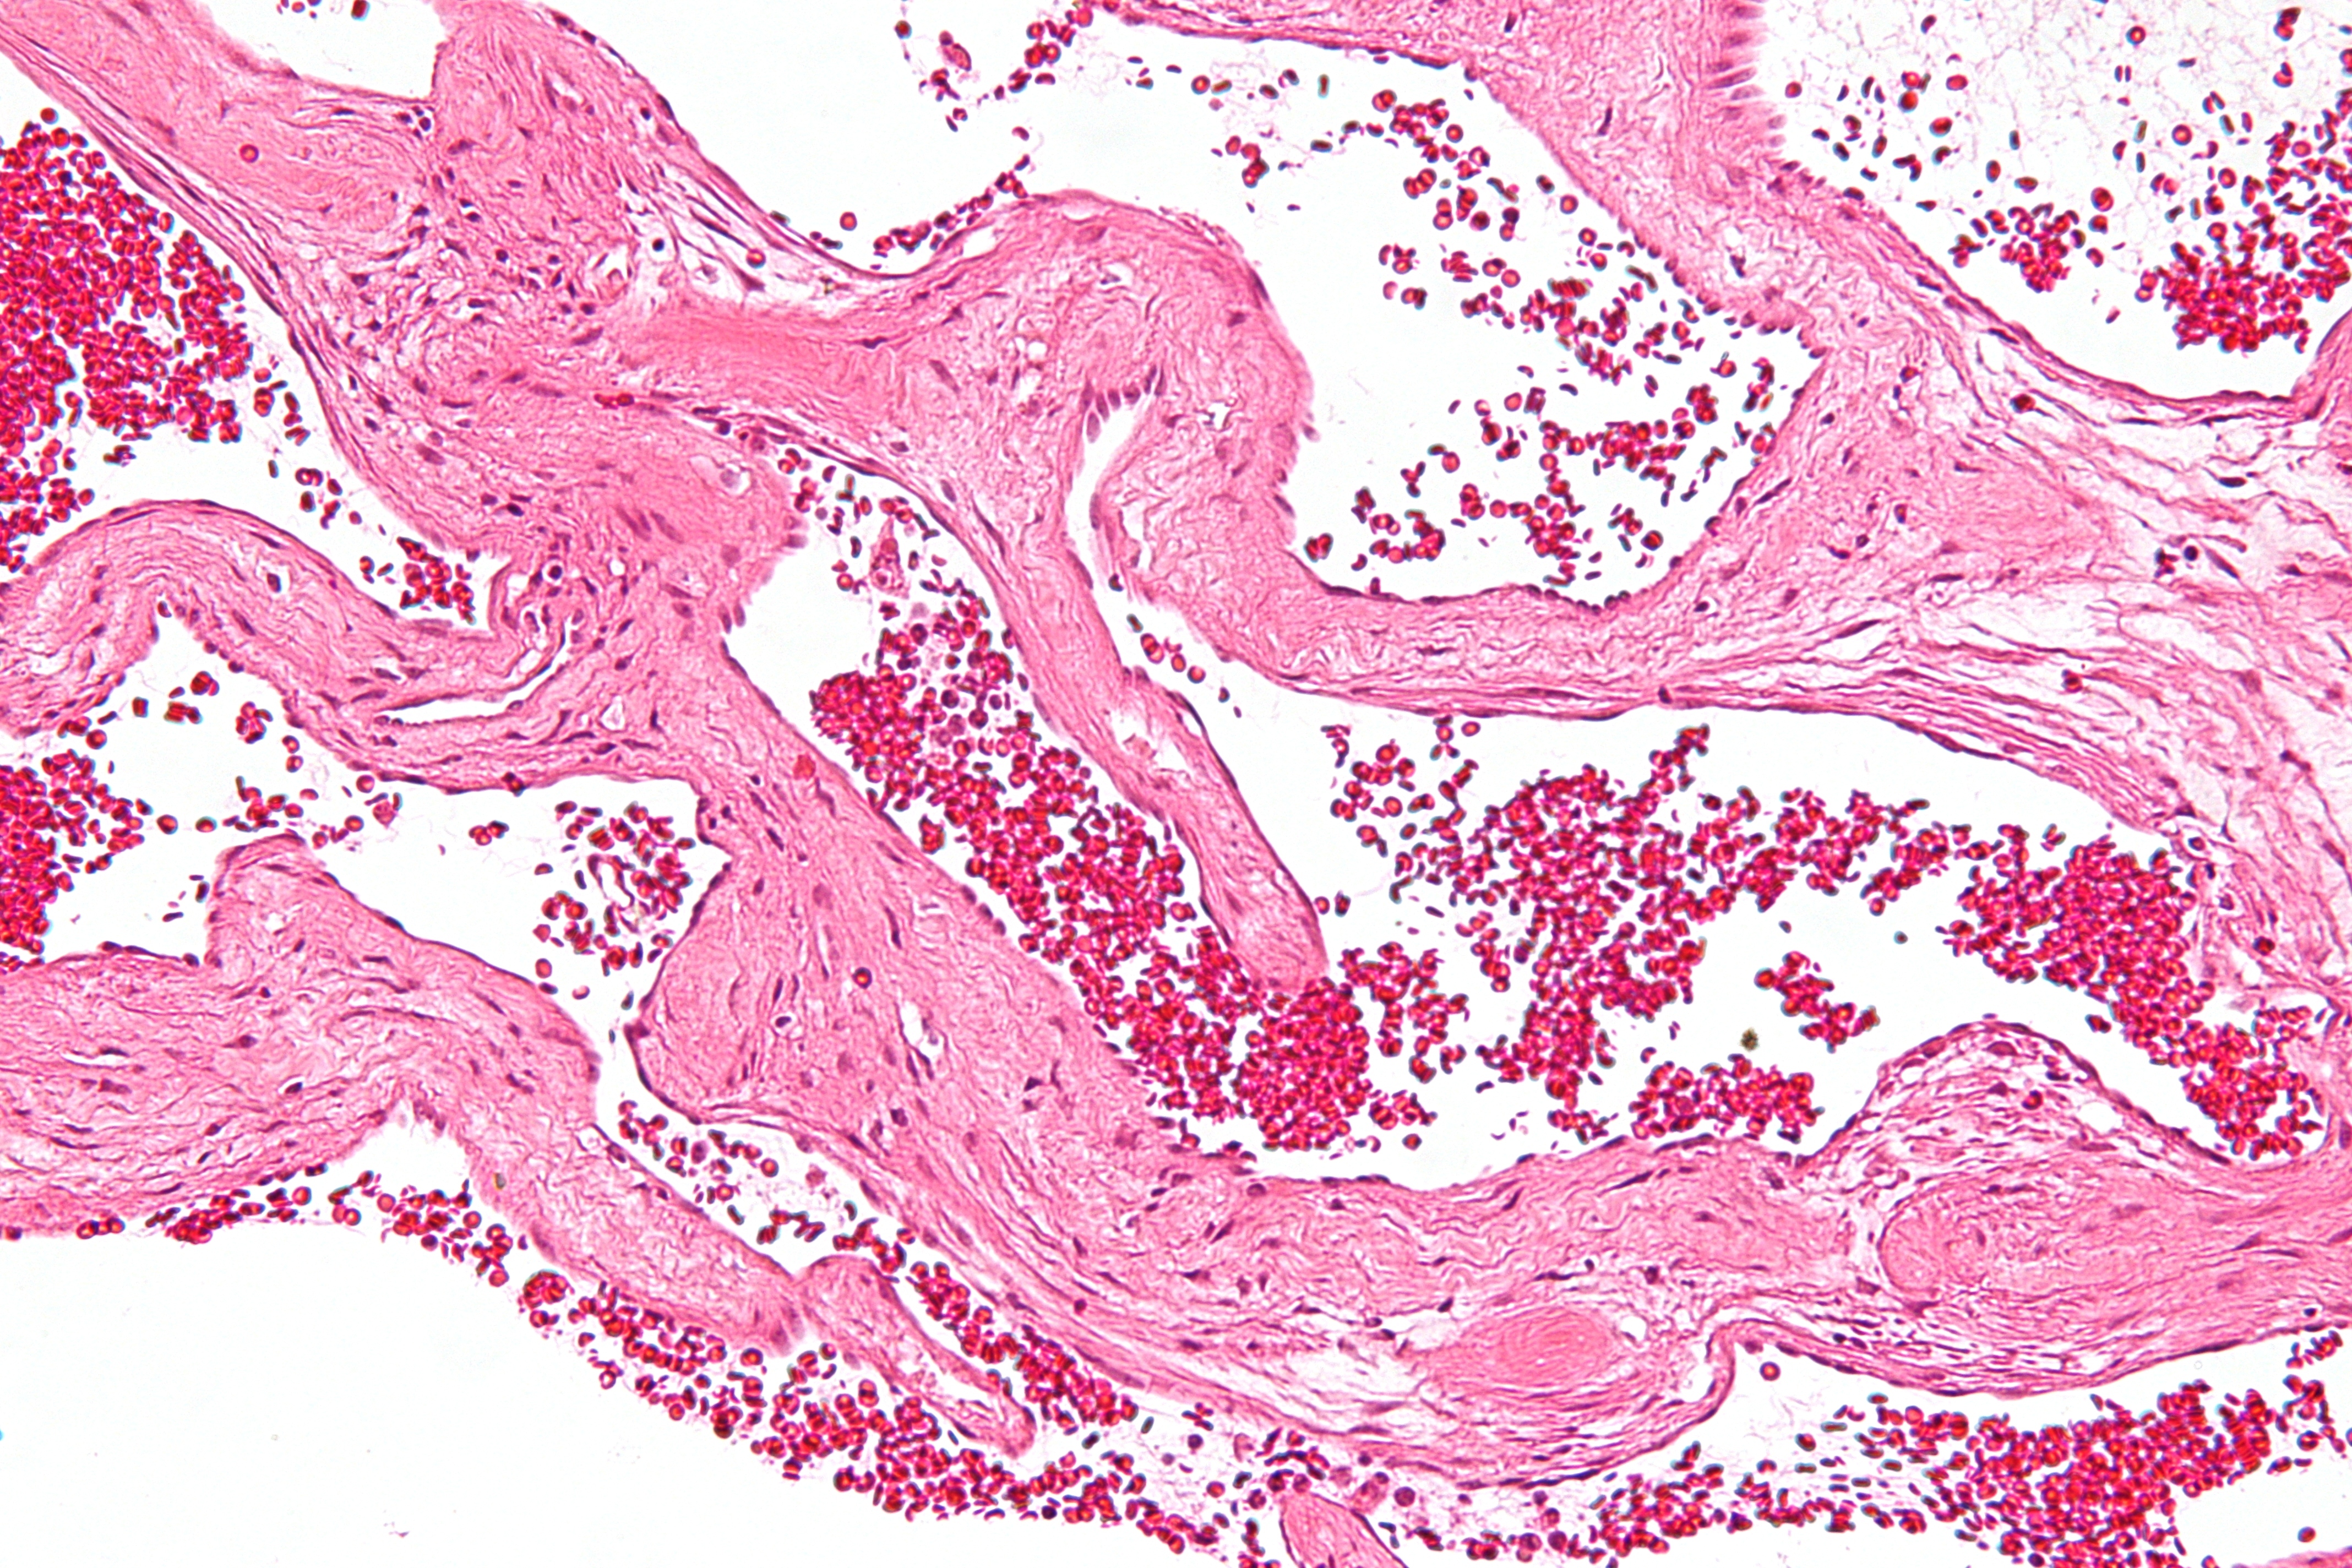 Capillary hemangioma - Wikipedia